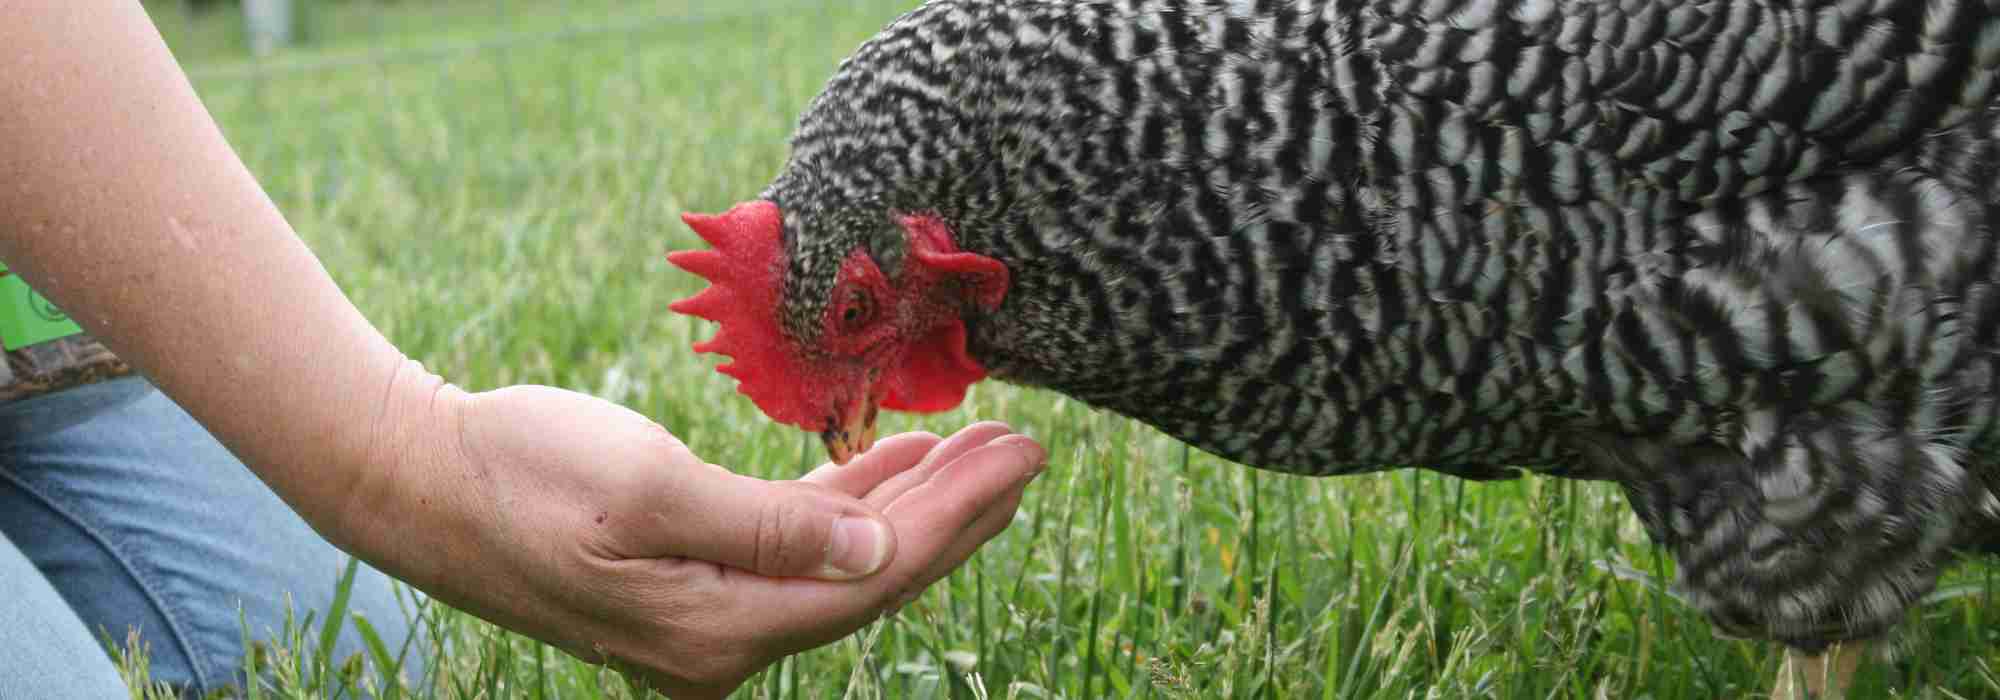 Jardinez pour vos poules : les plantes et céréales pour les nourrir